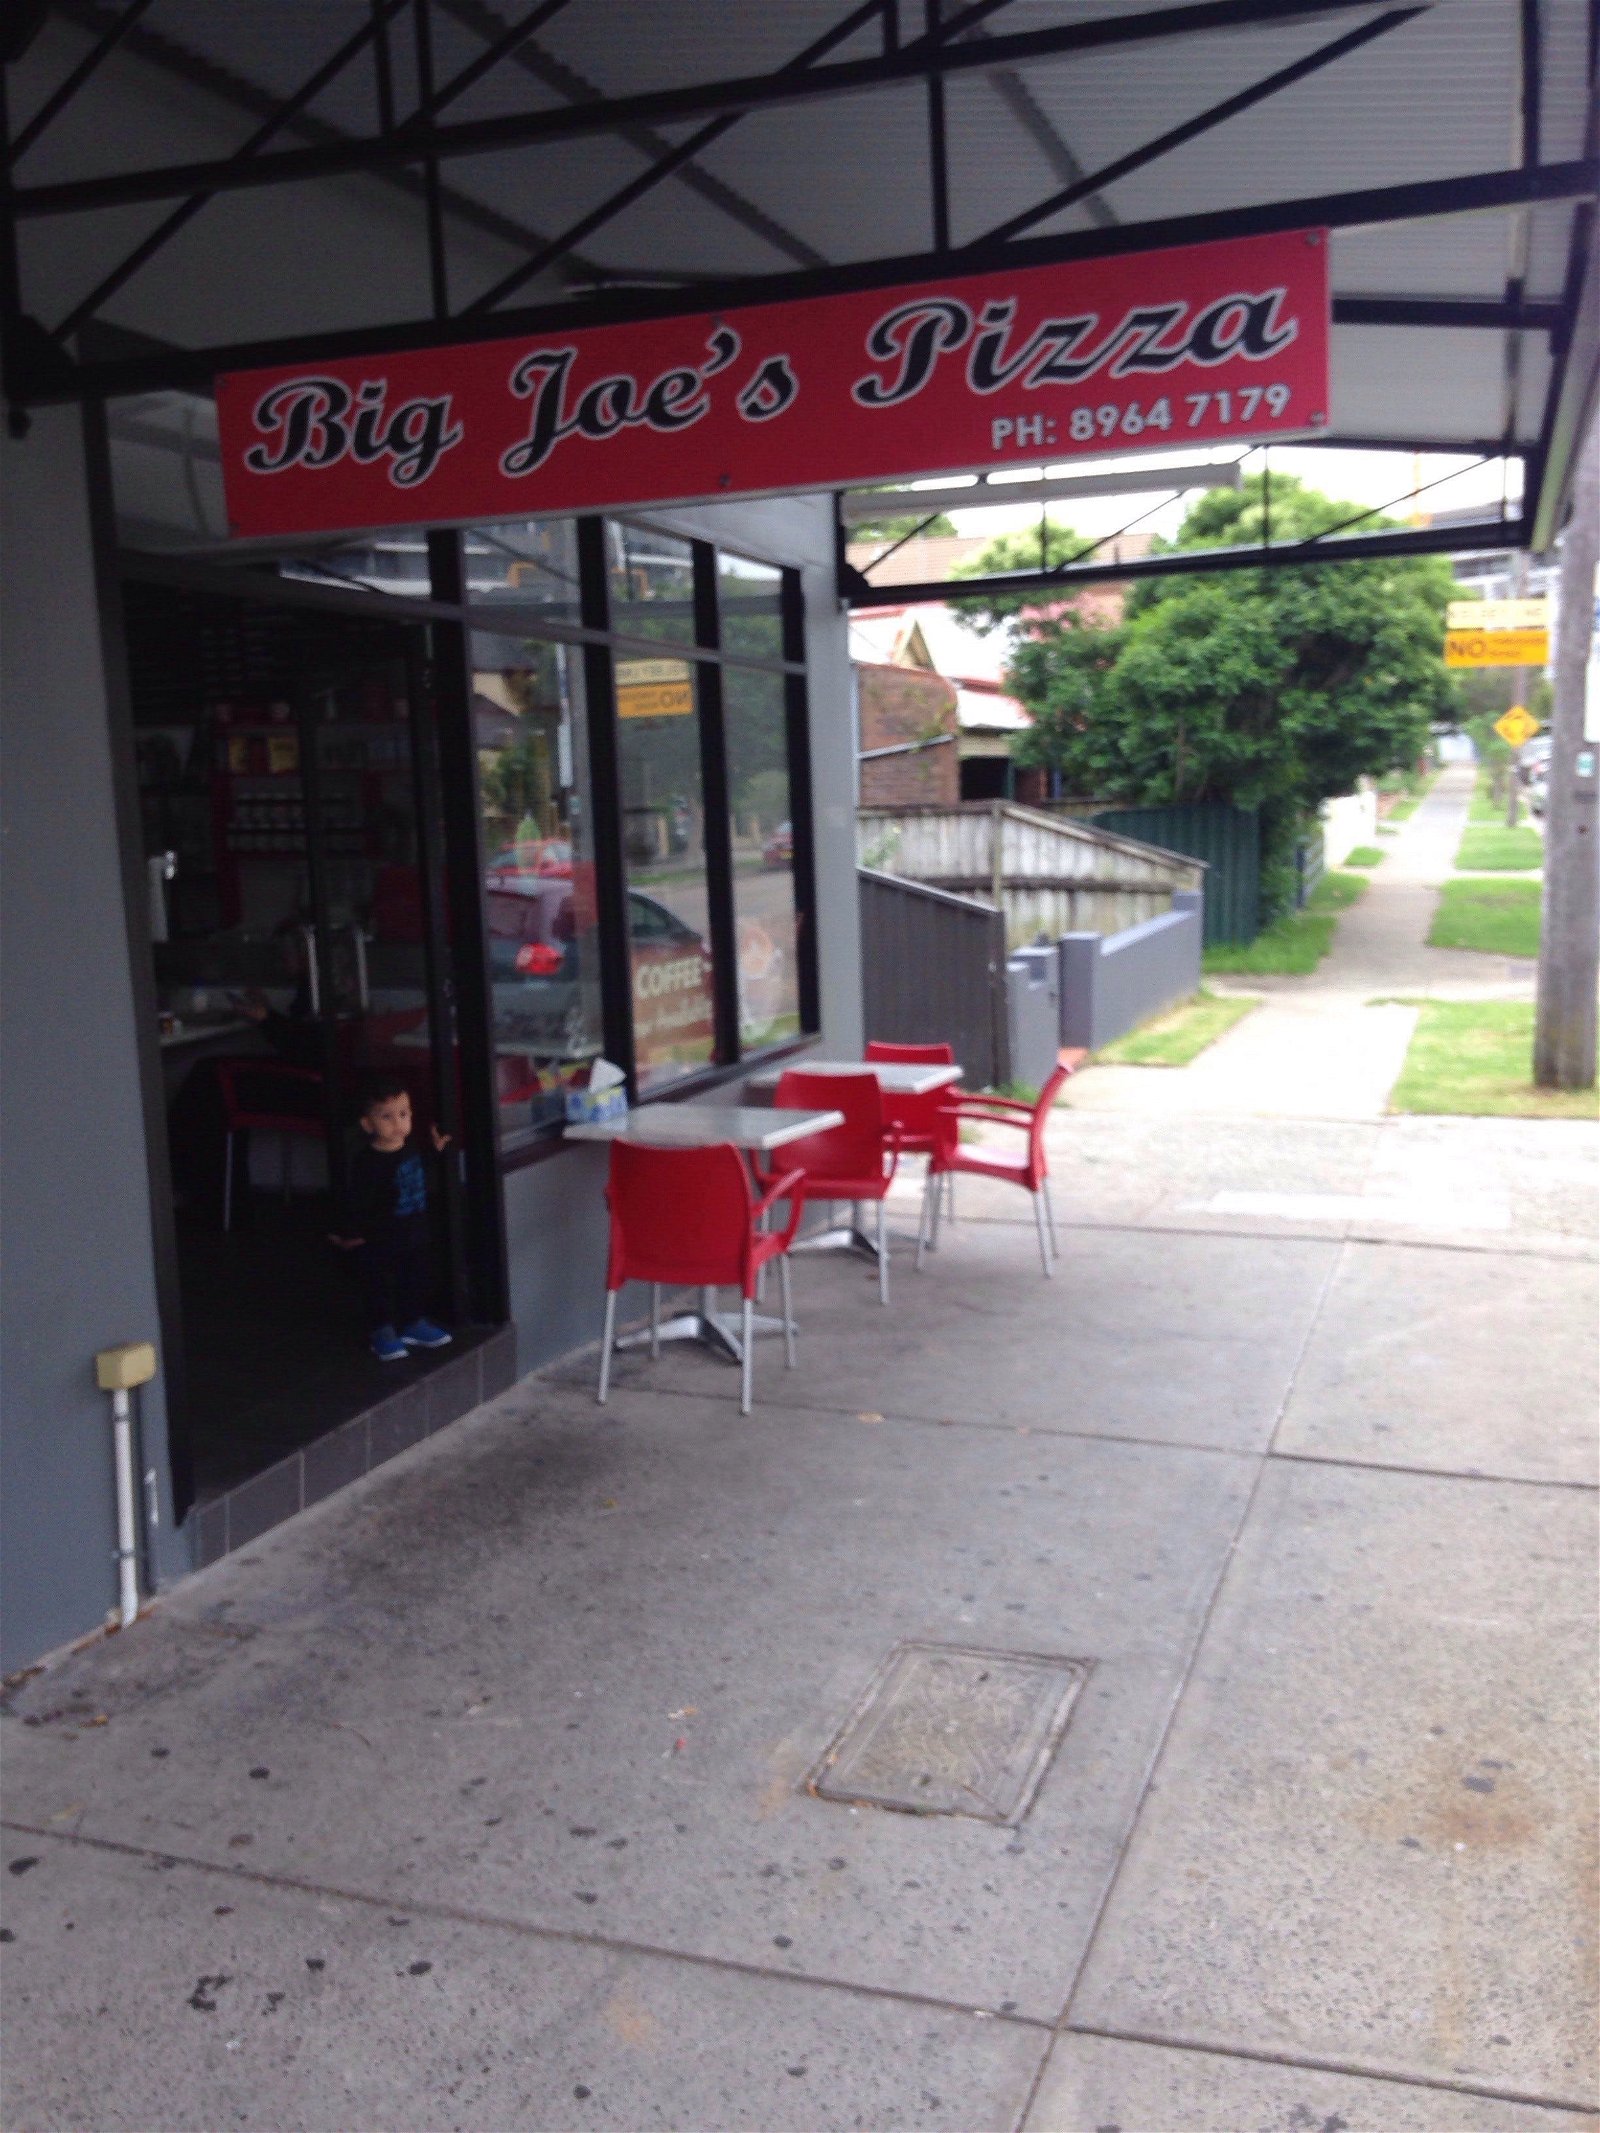 Big Joe's Pizza - Pubs Sydney